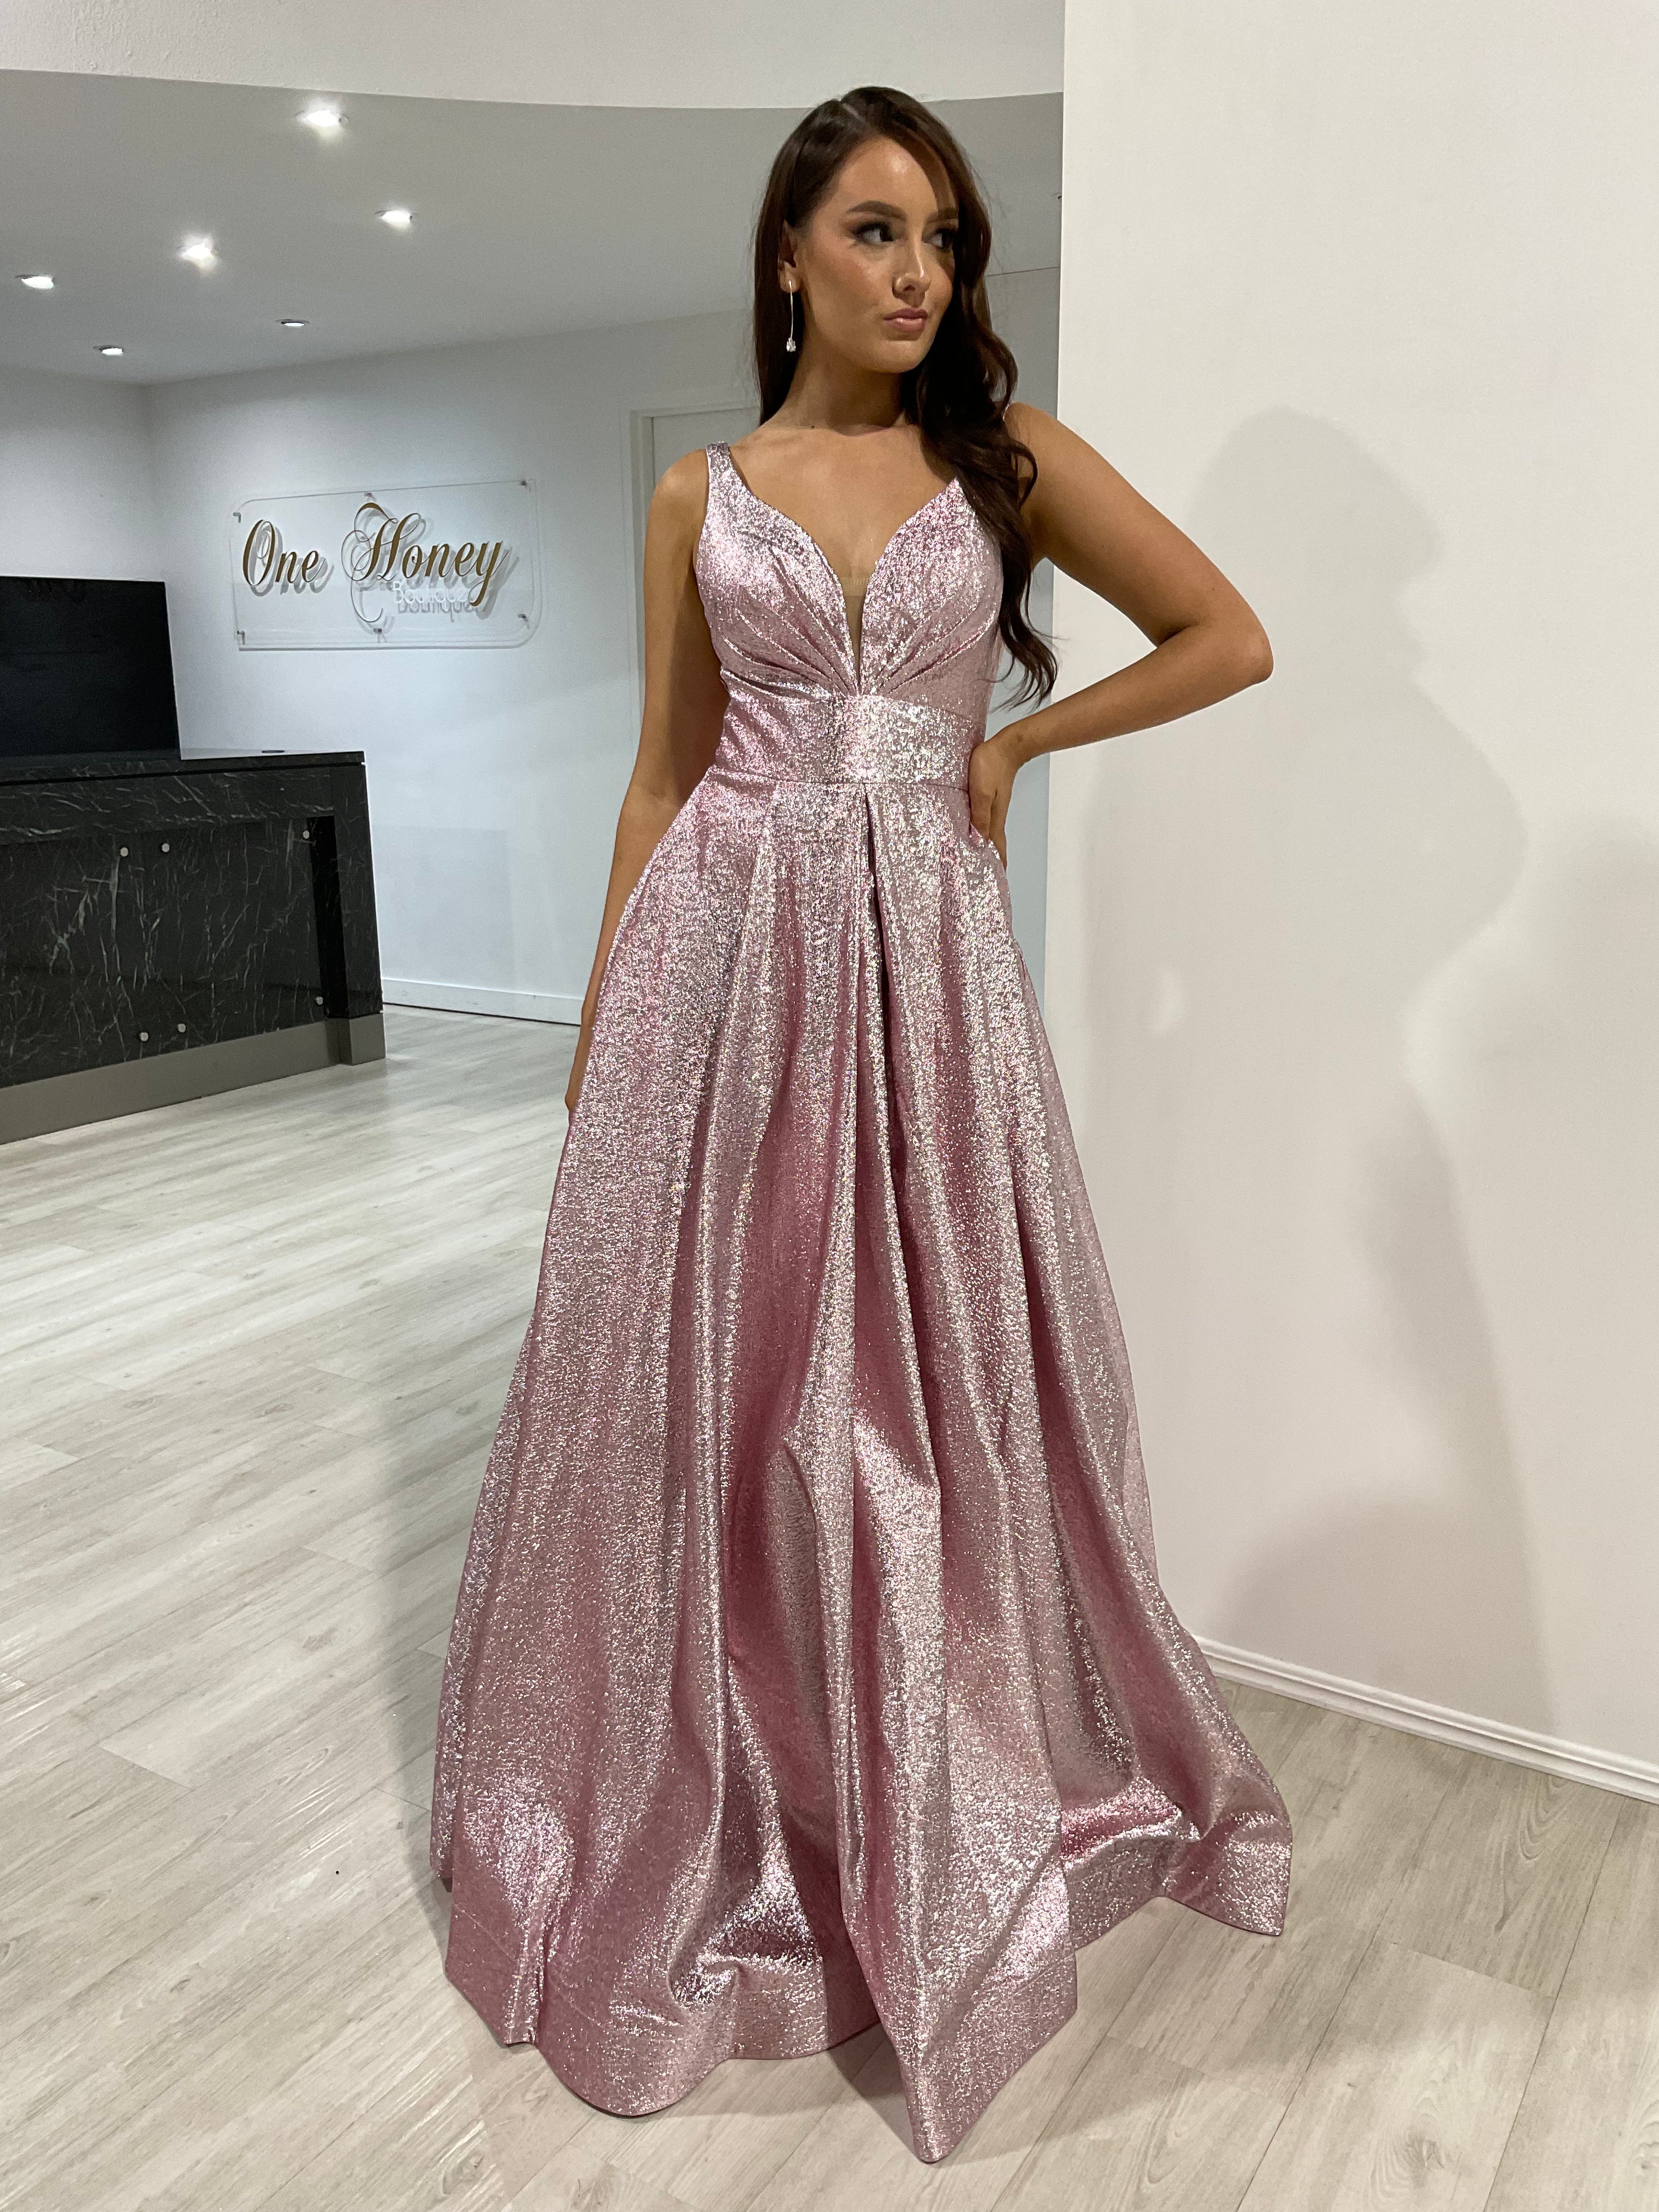 Honey Couture LORI Metallic Blush Pink Ball Gown Formal Dress